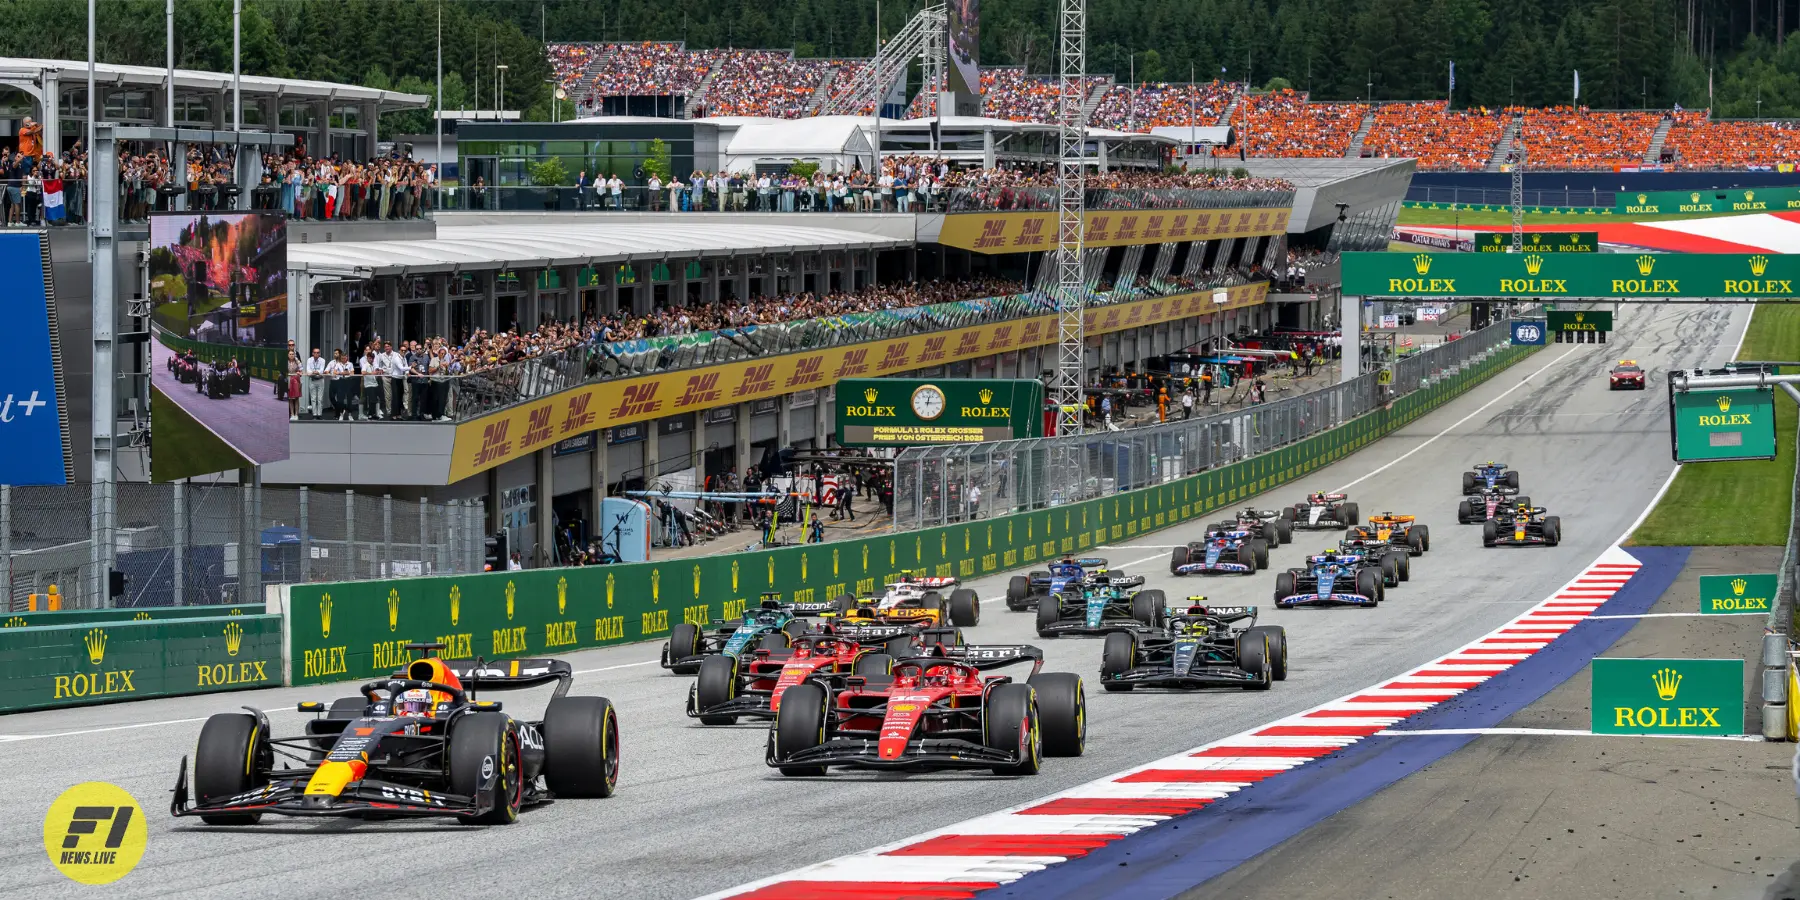 Verstappens victory overshadowed by post-race penalties at Austrian GP